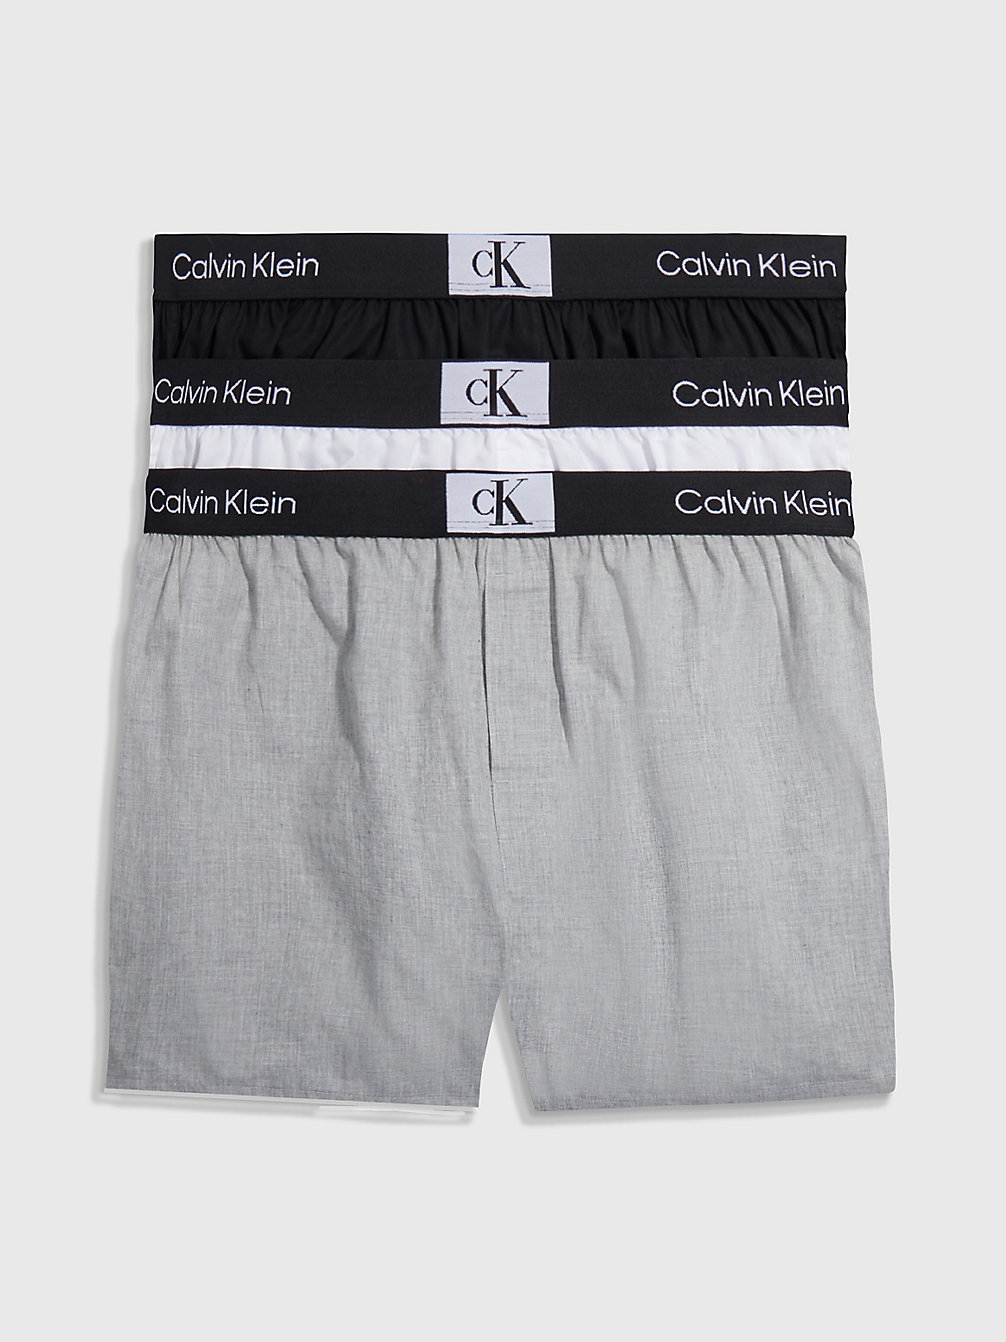 BLACK/WHITE/GREY HEATHER > 3er-Pack Slim Fit Boxershorts - Ck96 > undefined Herren - Calvin Klein